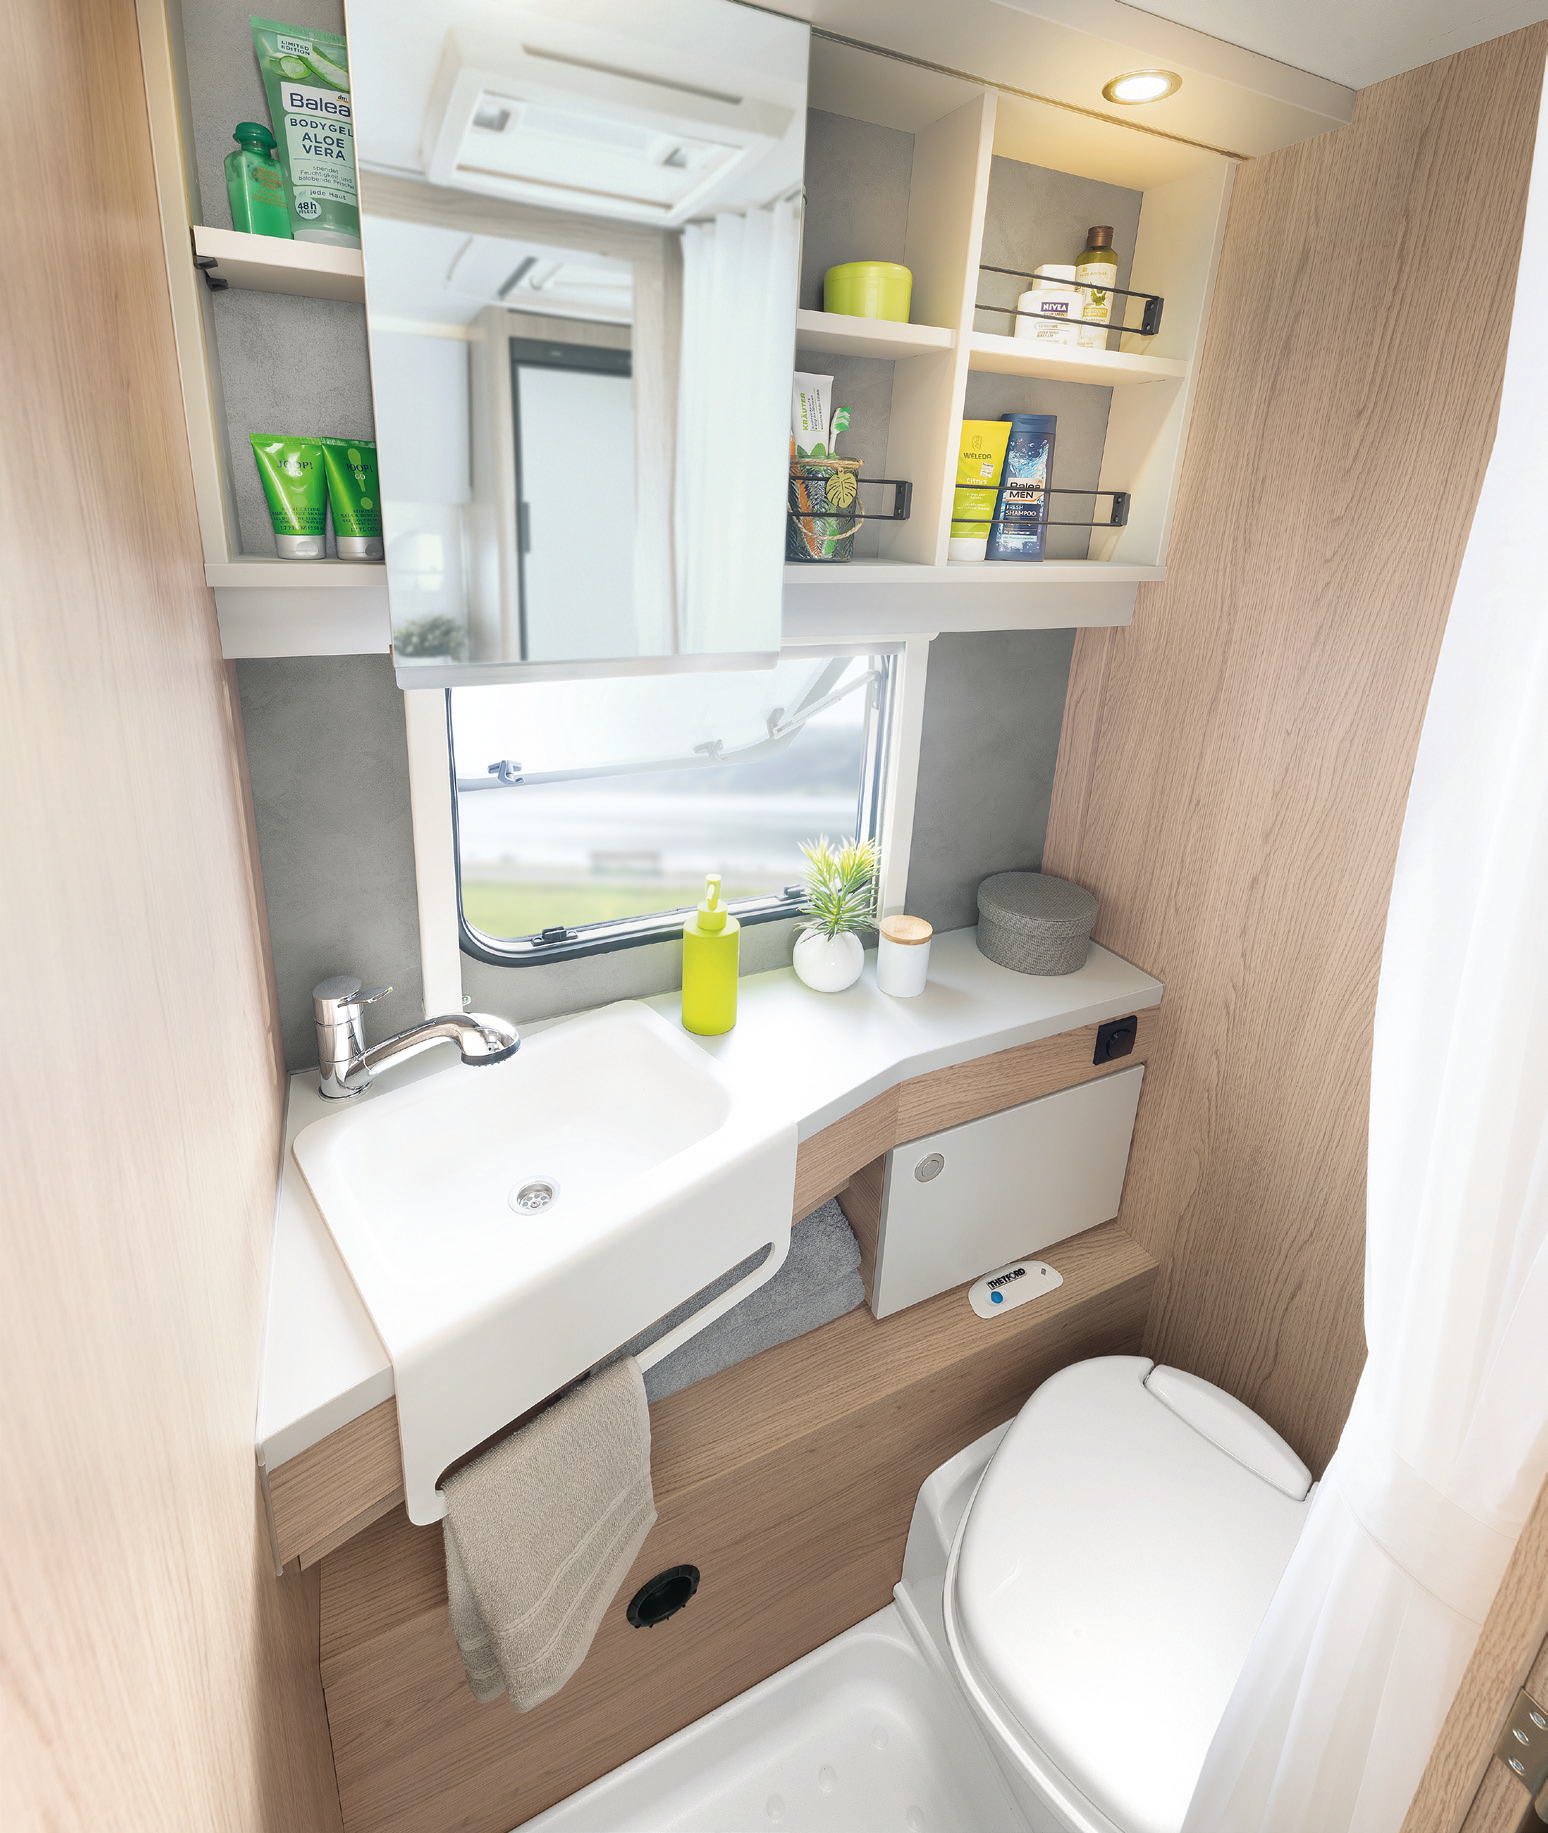 Compacte badkamer in lichte kleuren met mooie, praktische details, zoals de ingebouwde handdoekhouder • 510 ER | Skagen